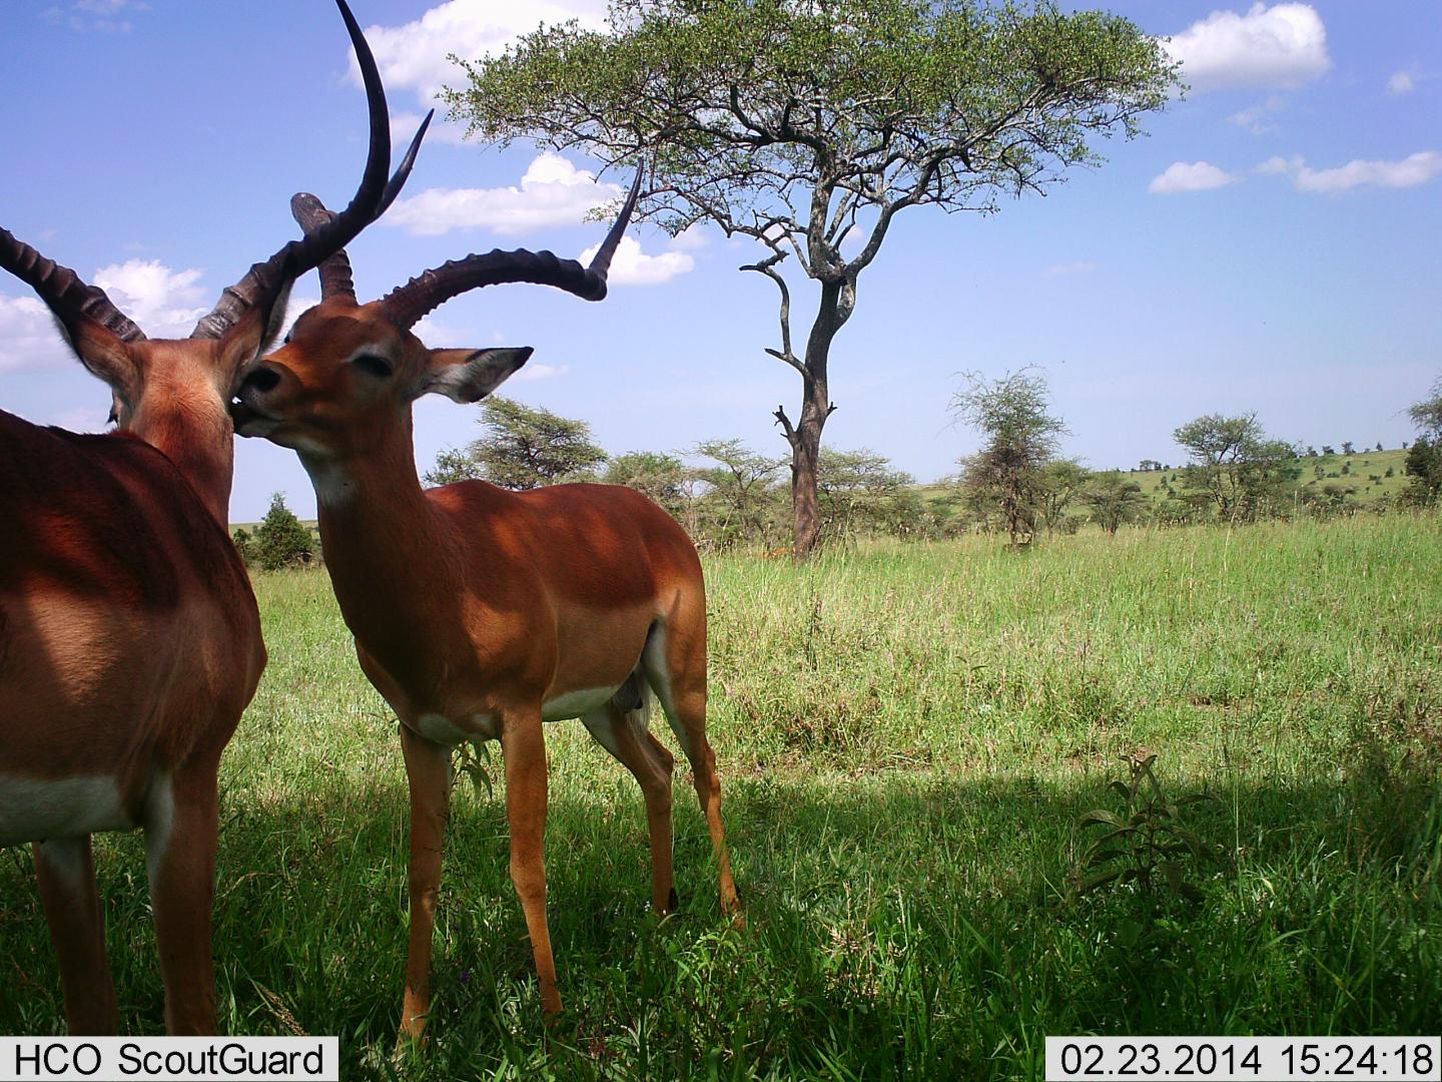 Tehisintellekt suutis pea kõikidel Snapshot Serengeti projekti 3,2 miljonil fotol esinevad loomad ära tunda. Näiteks sellel fotol seisavad arvuti õigetel andmetel kaks impalat.